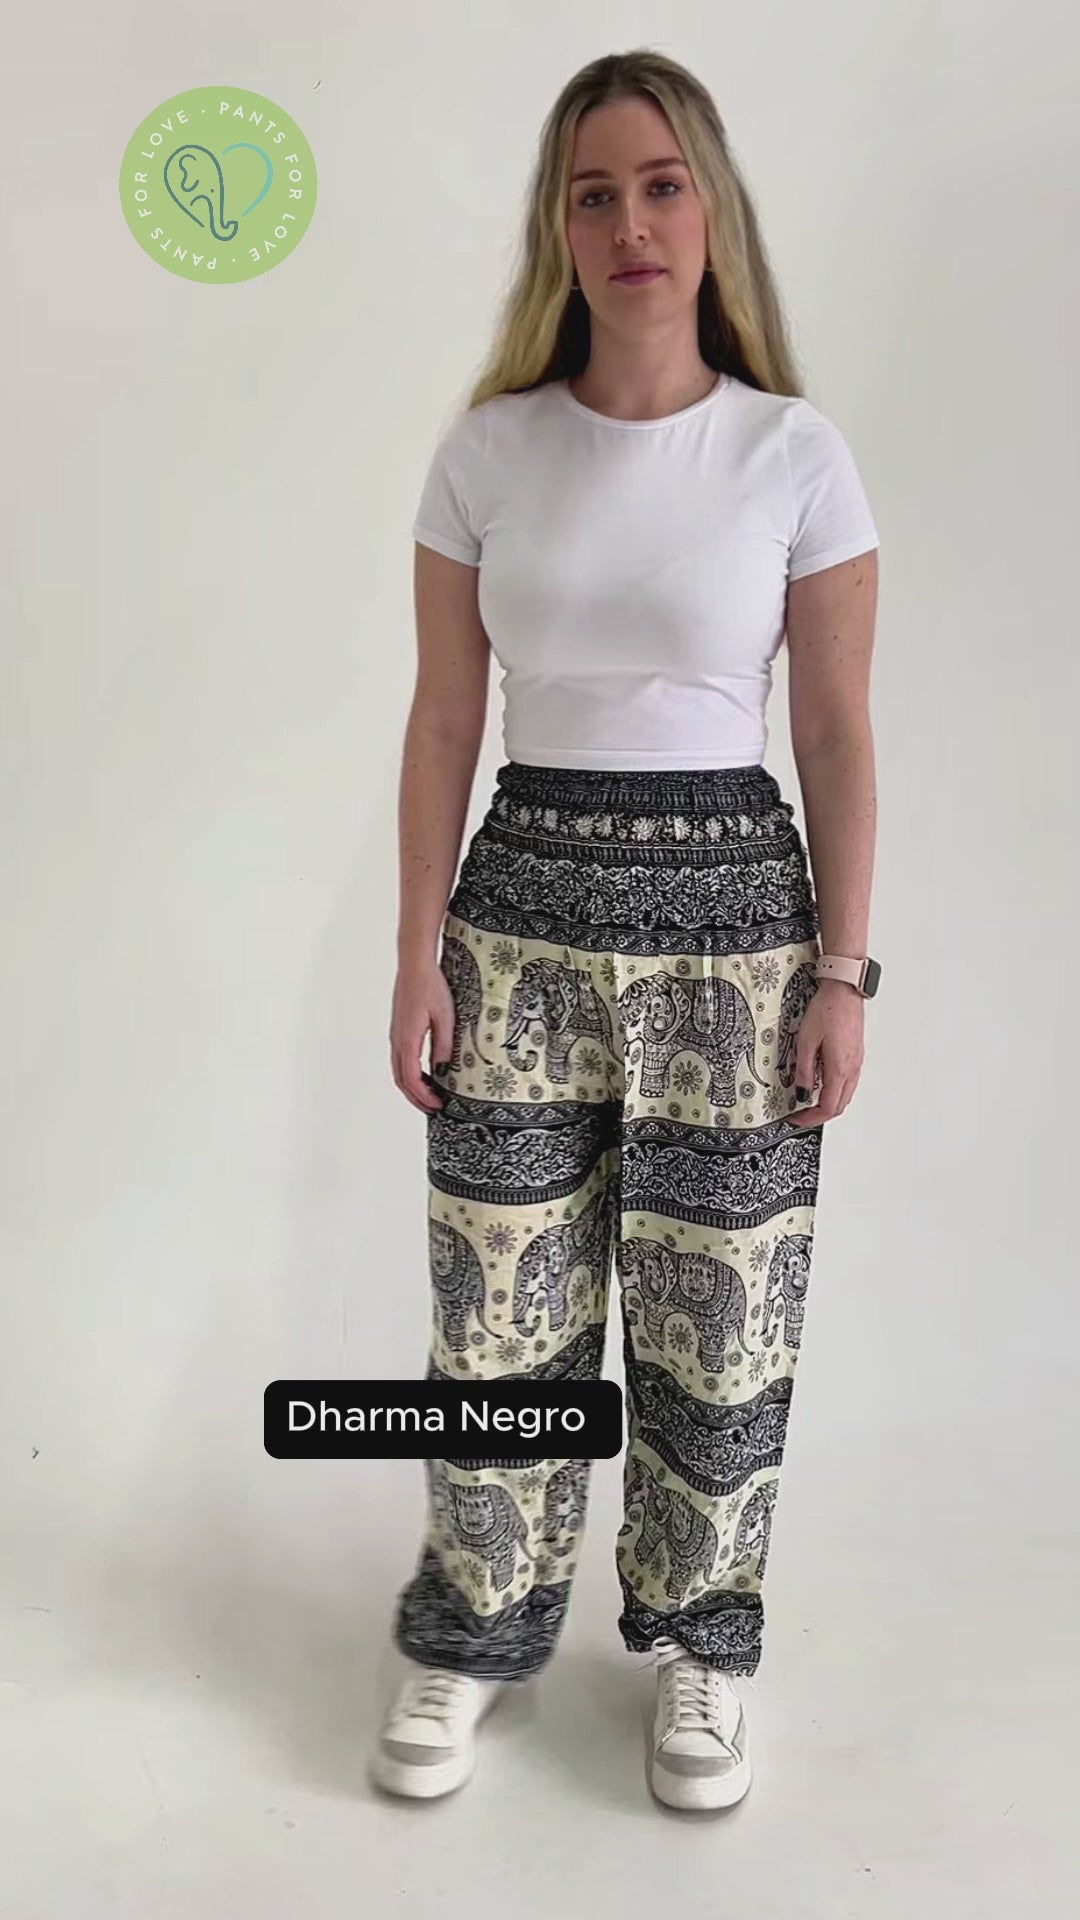 Dharma Negro